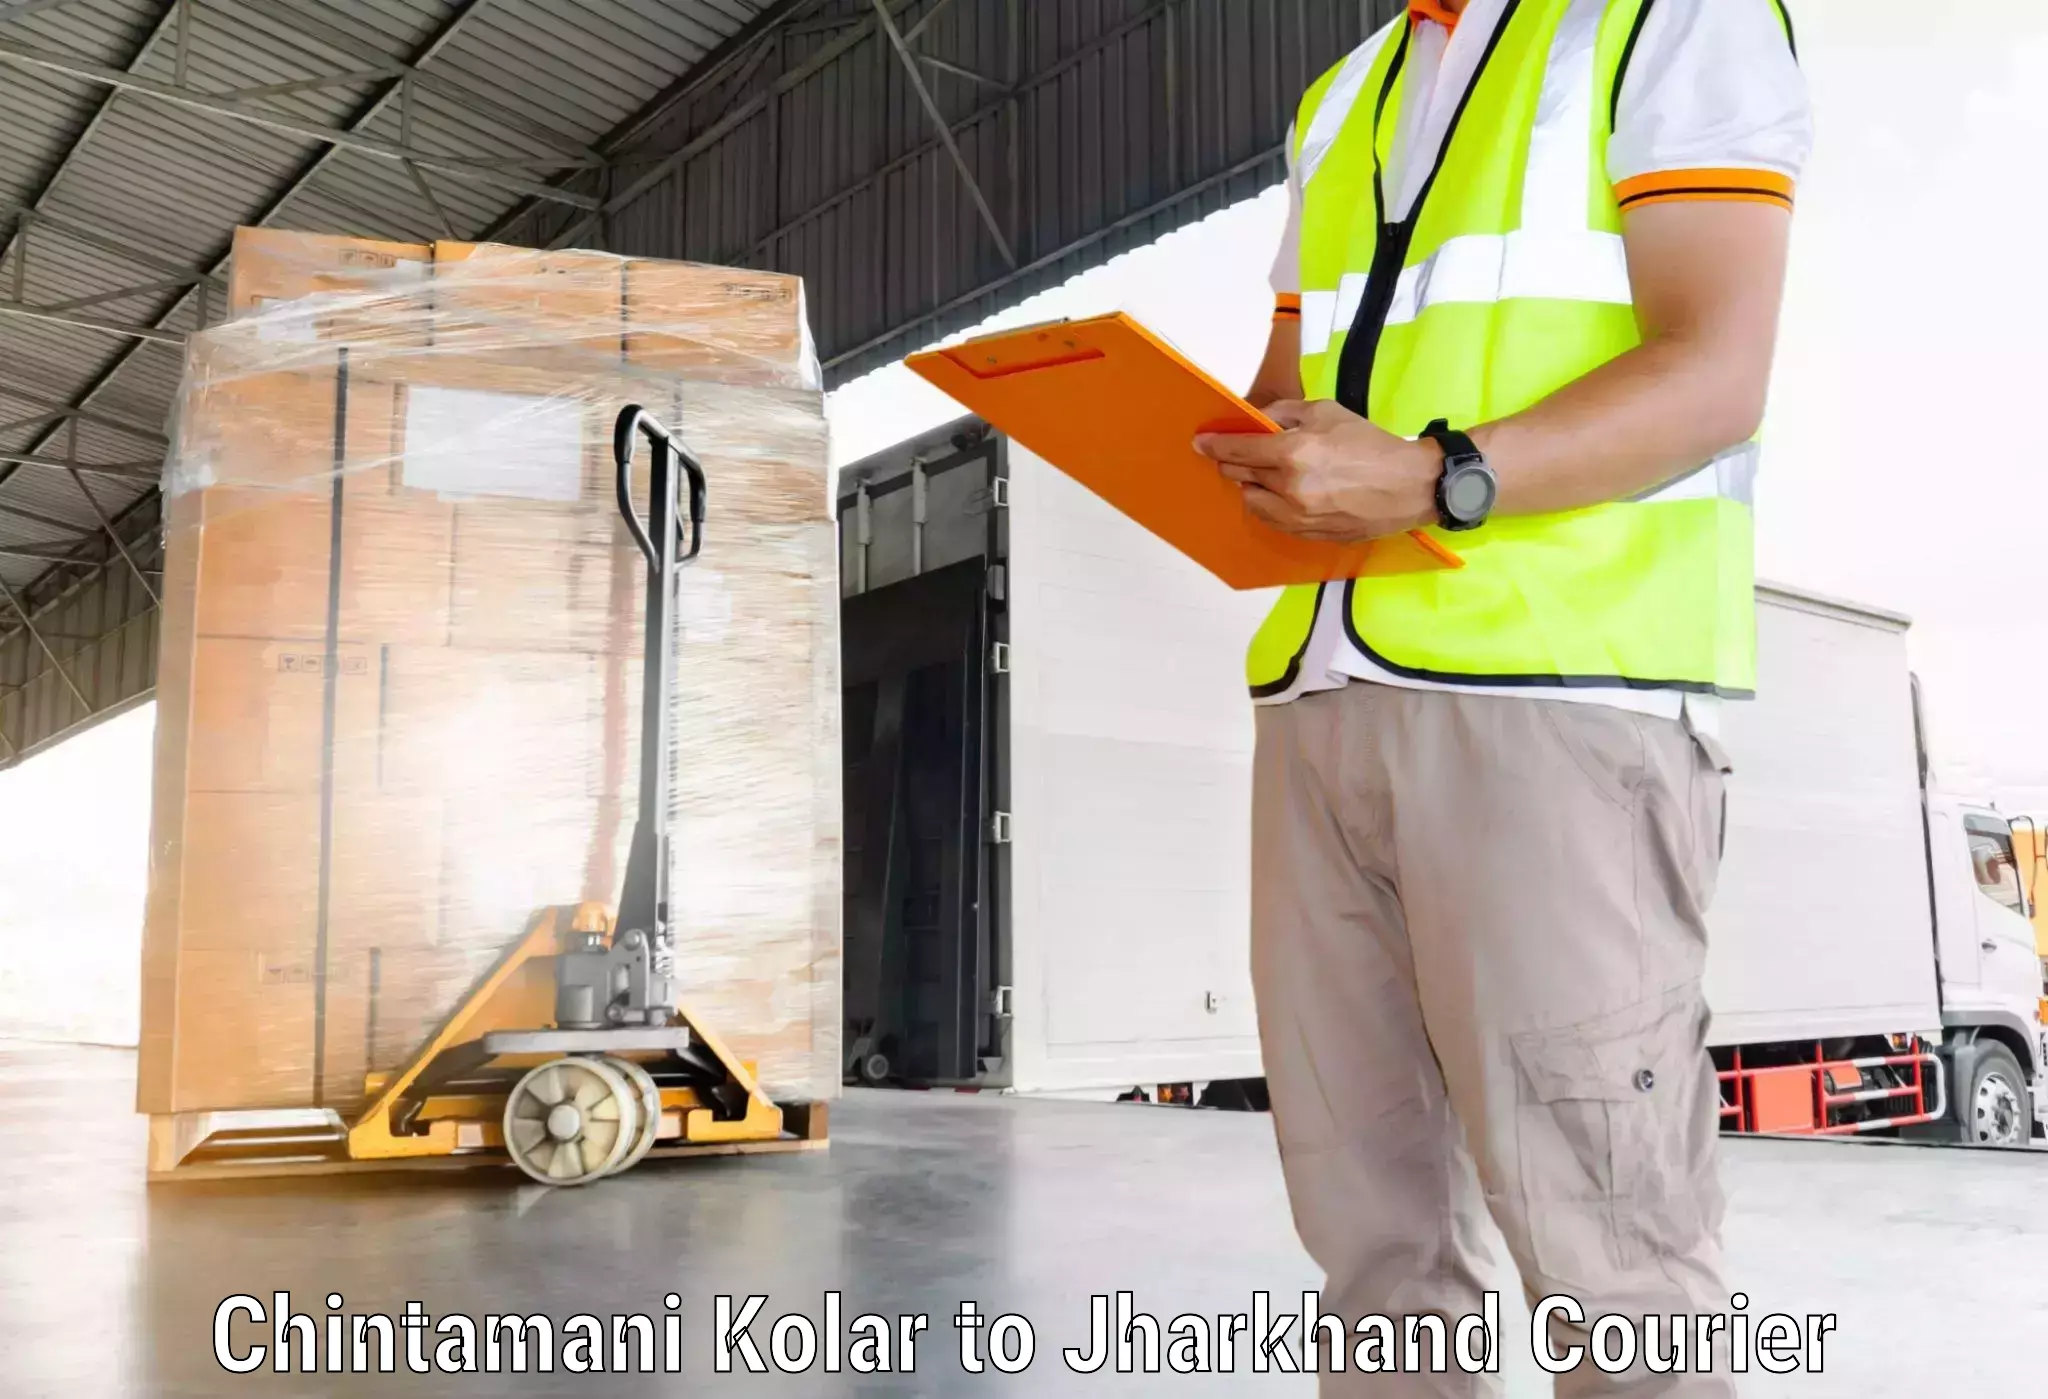 Return courier service Chintamani Kolar to Tandwa